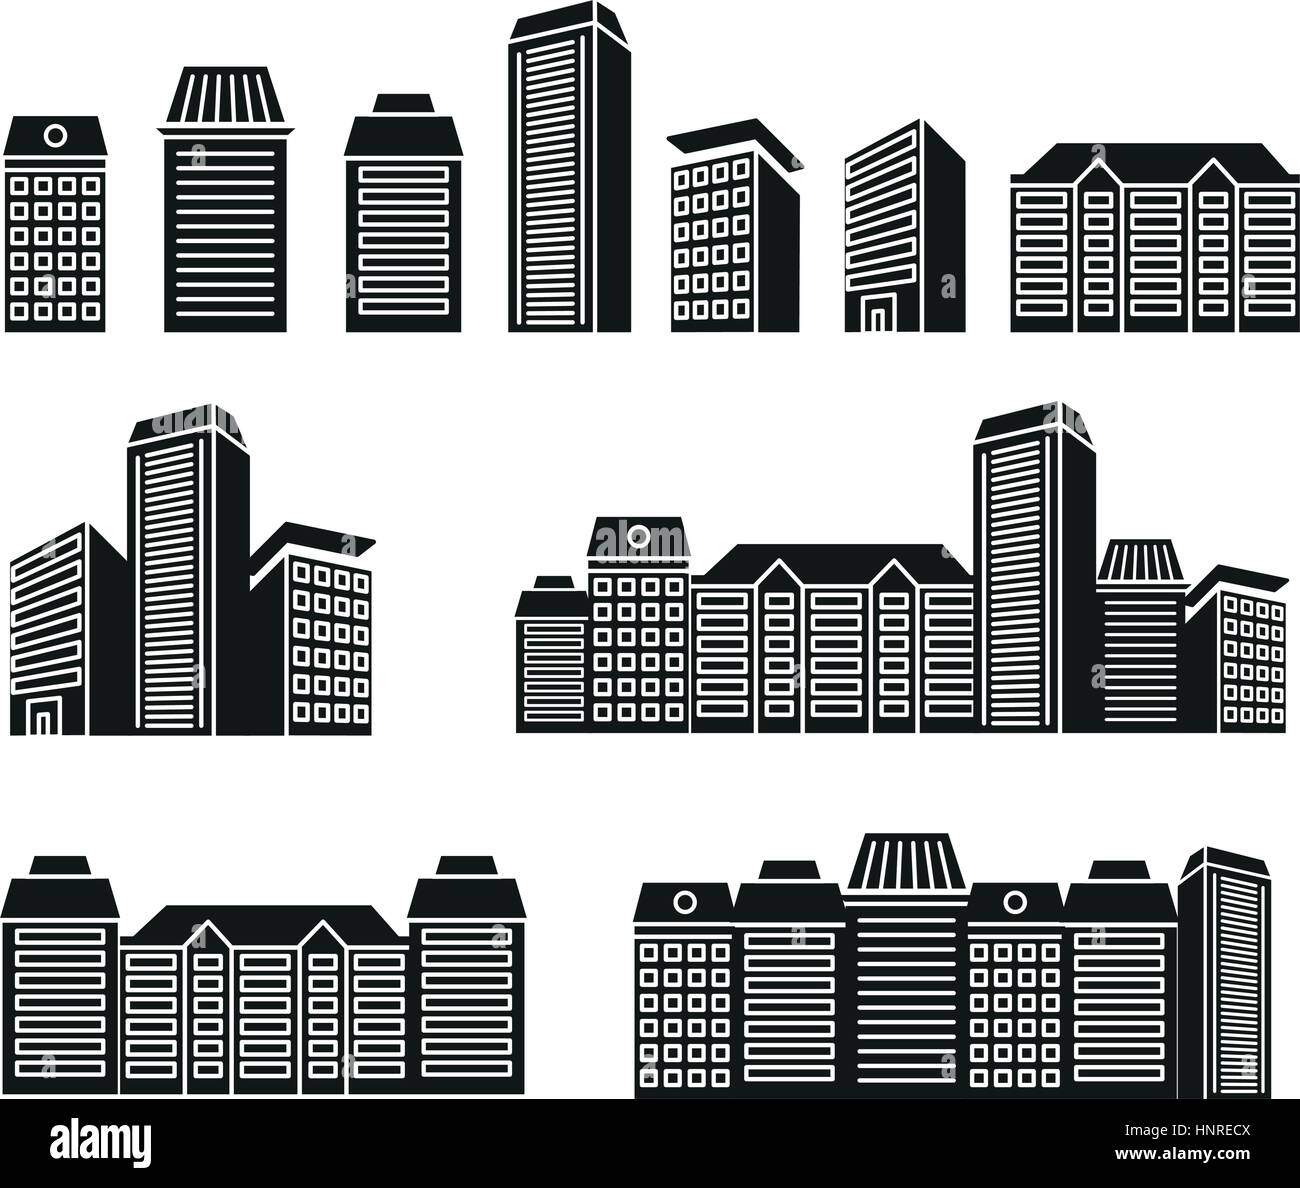 Aislados de color blanco y negro rascacielos y casas de baja altura en lineart colección de iconos de estilo, paisaje urbano de edificios arquitectónicos ilustraciones vectoriales. Ilustración del Vector